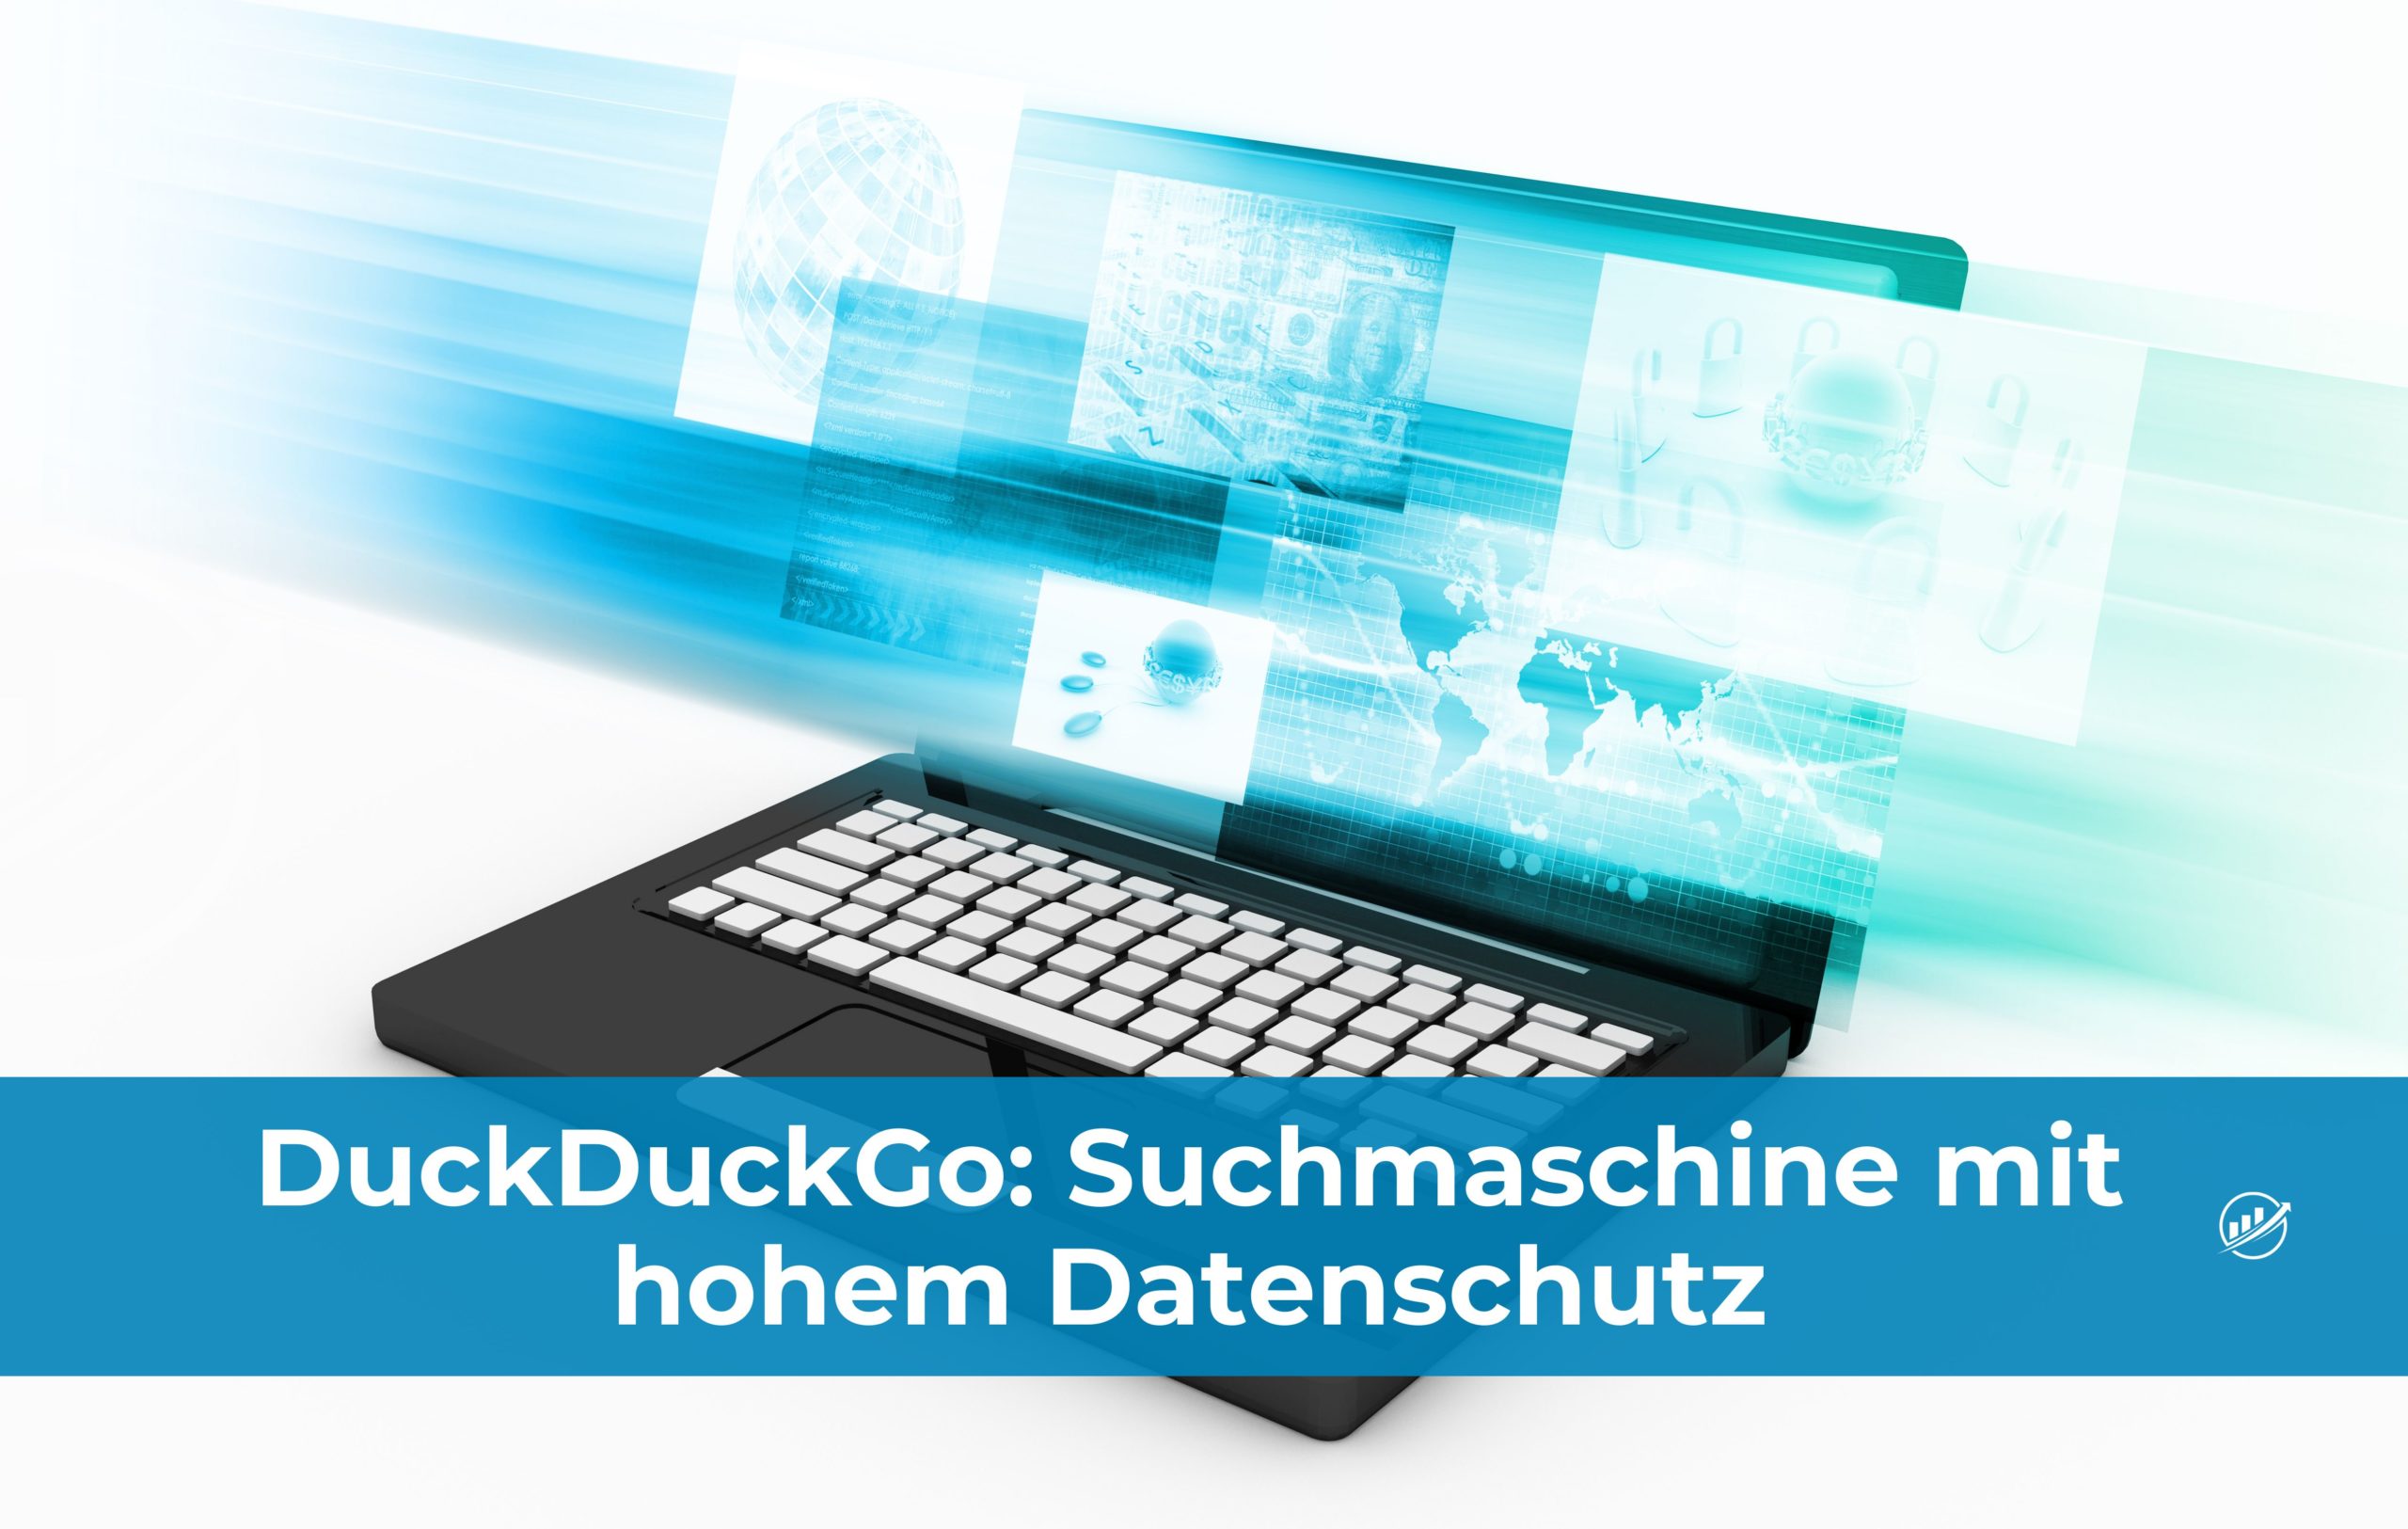 DuckDuckGo: Suchmaschine mit hohem Datenschutz